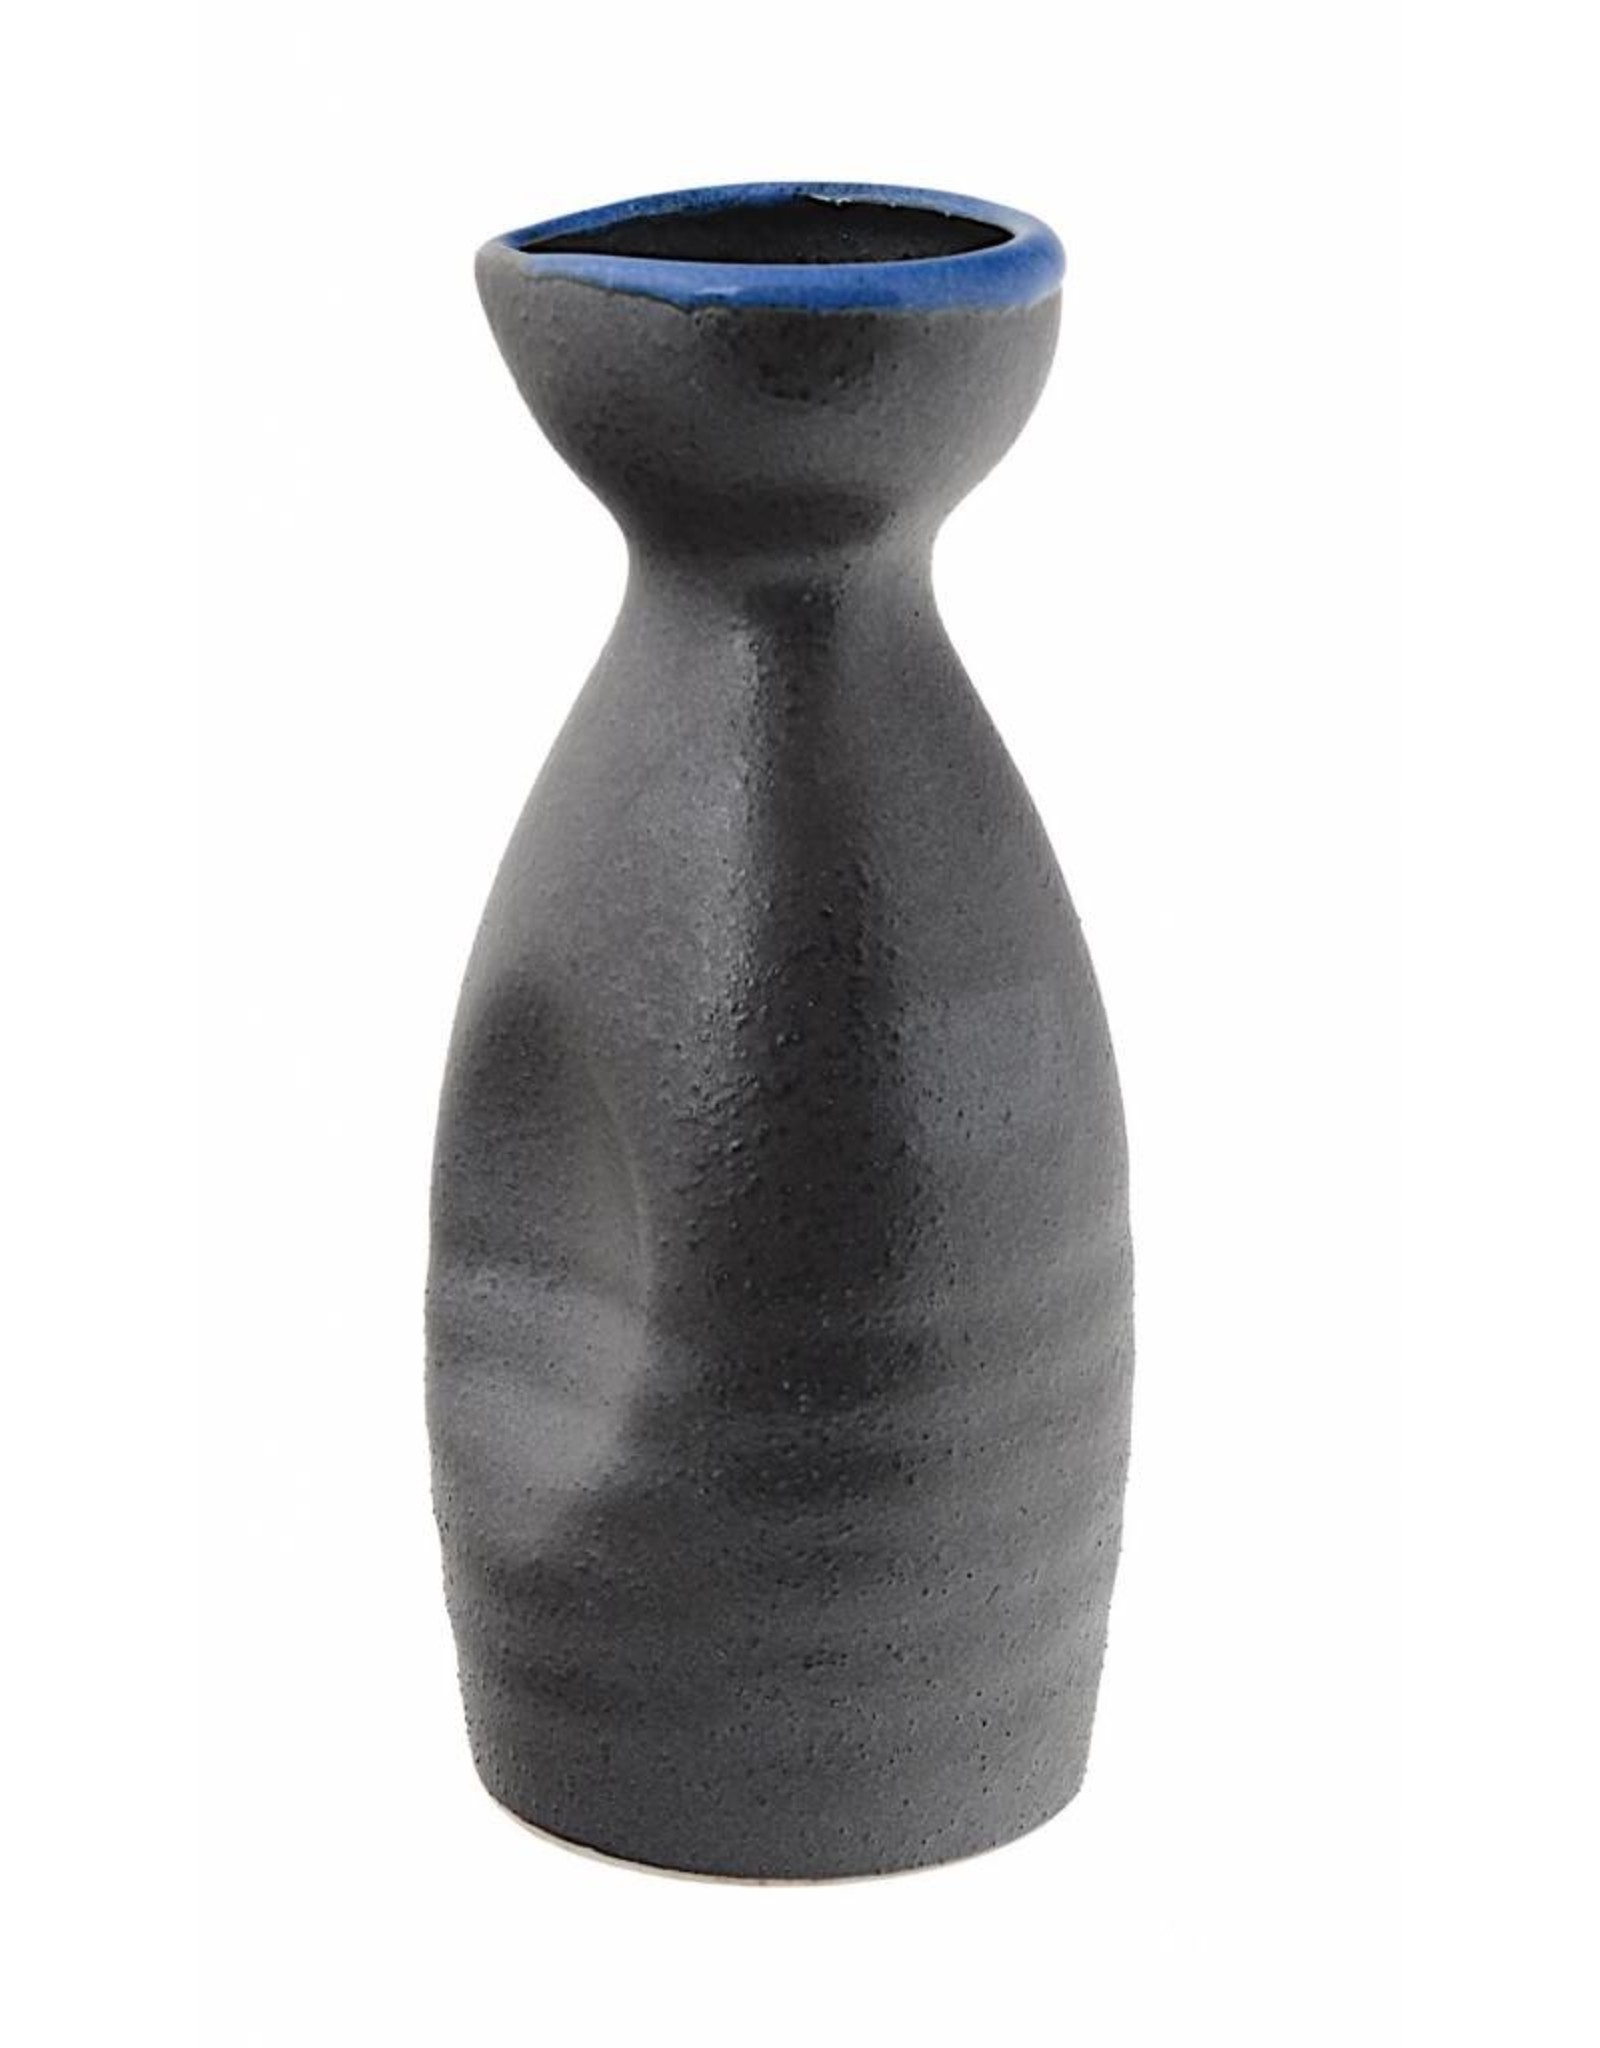 Tokyo Design Studio Sake fles in aardewerk 140ml zwart/blauw